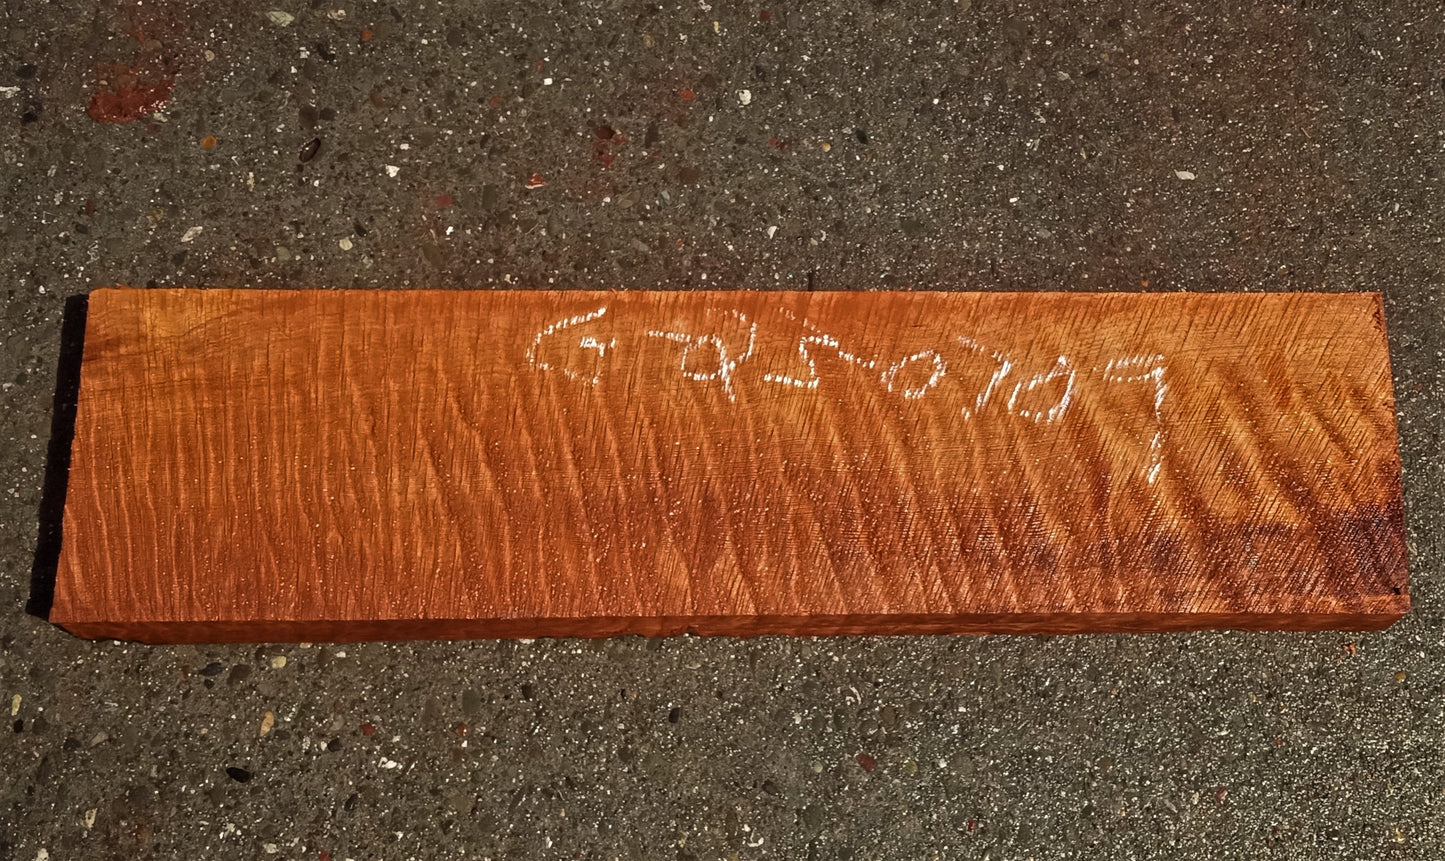 Quilted redwood | guitar billet | wood turning | DIY crafts | g23-0709